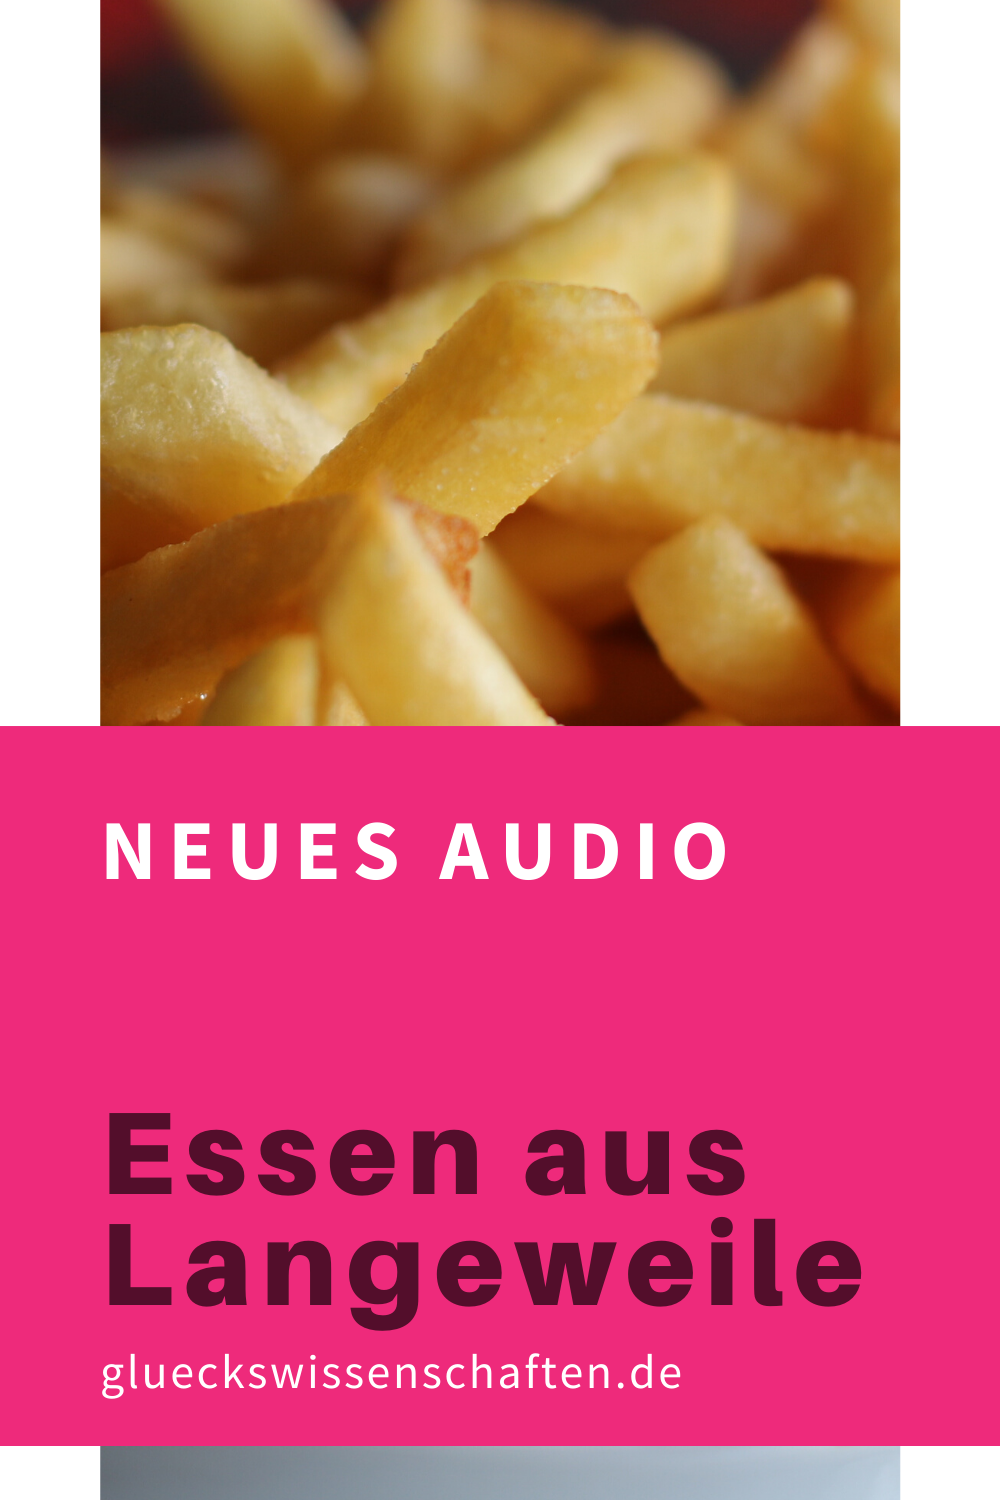 Glueckswissenschaften- Neues Audio - Essen aus Langeweile